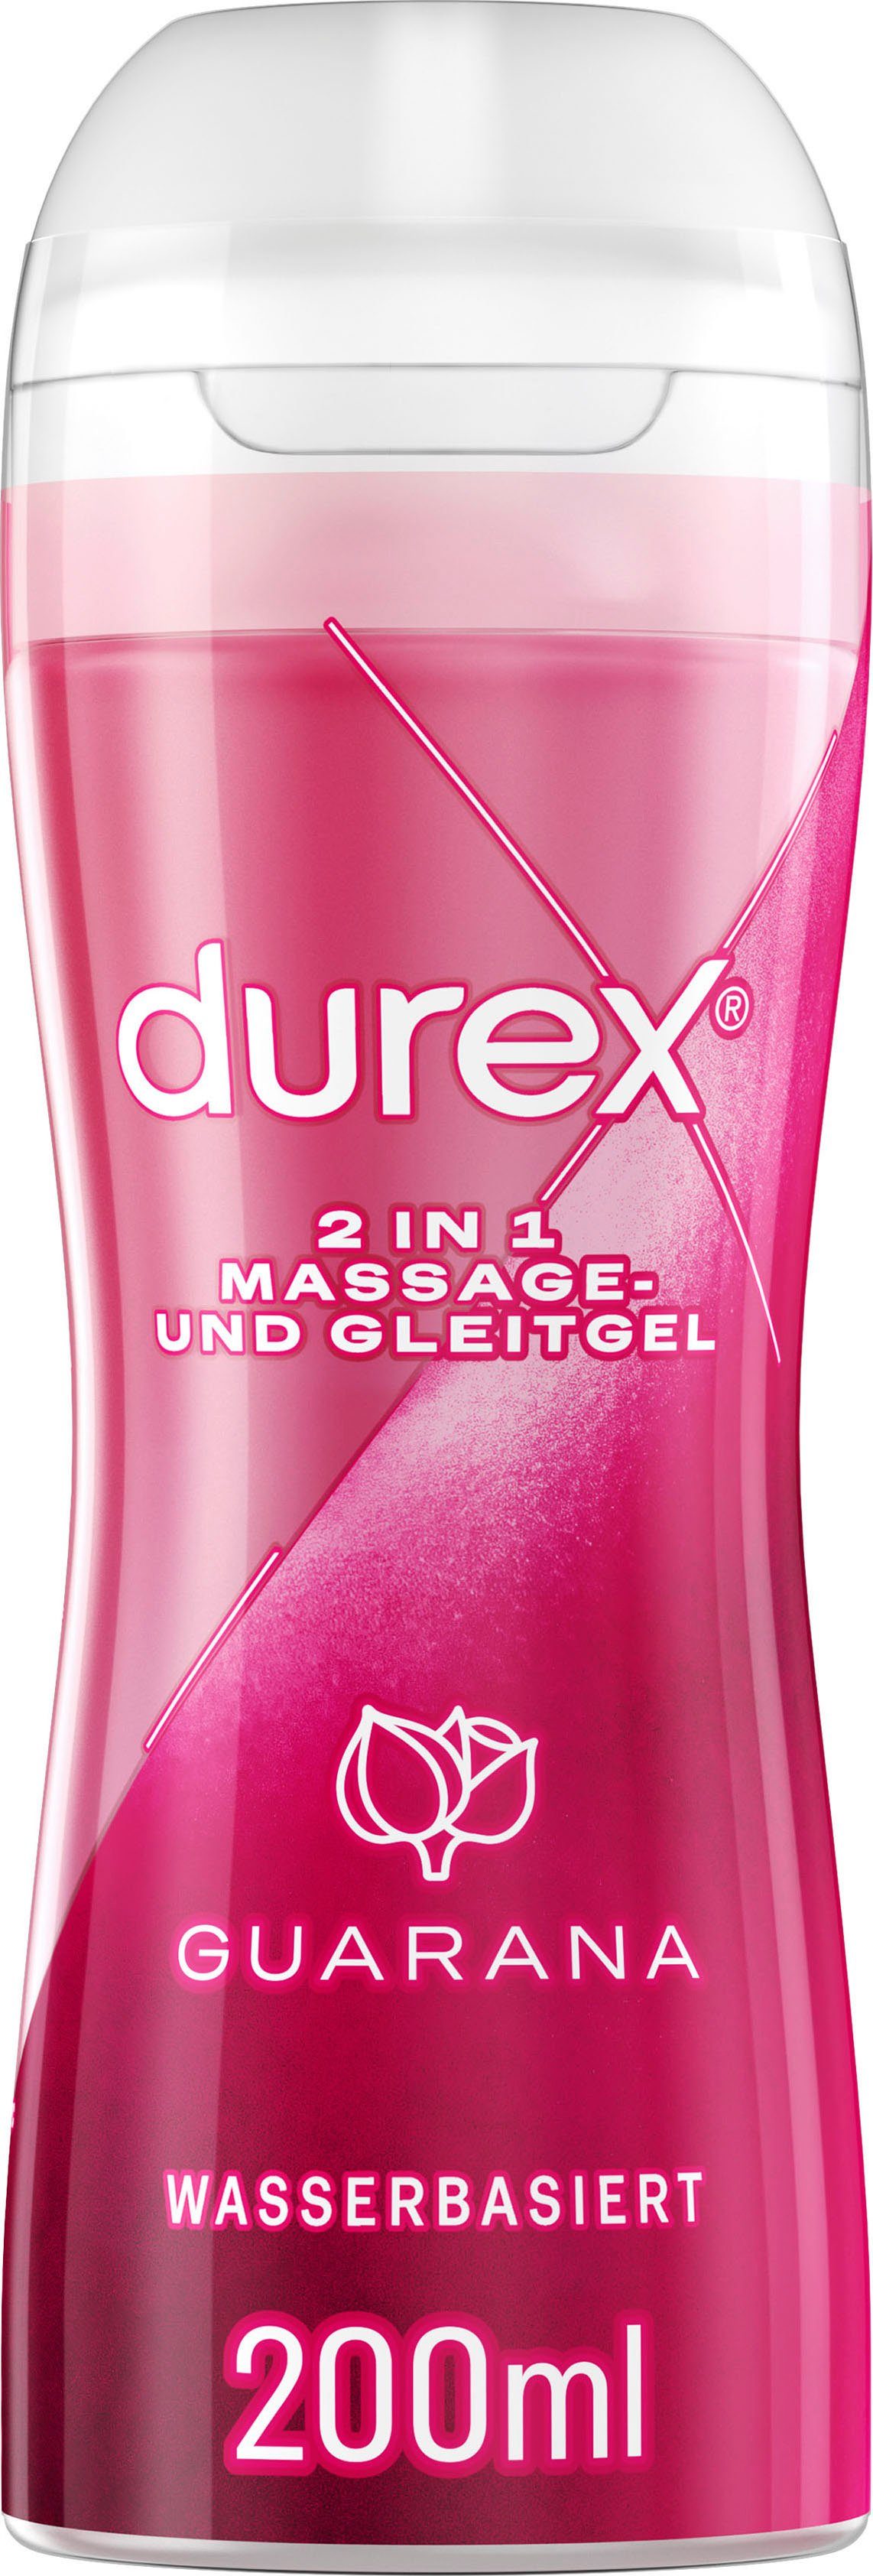 Durex 2in1 Massage & Gleitgel Guarana online kaufen